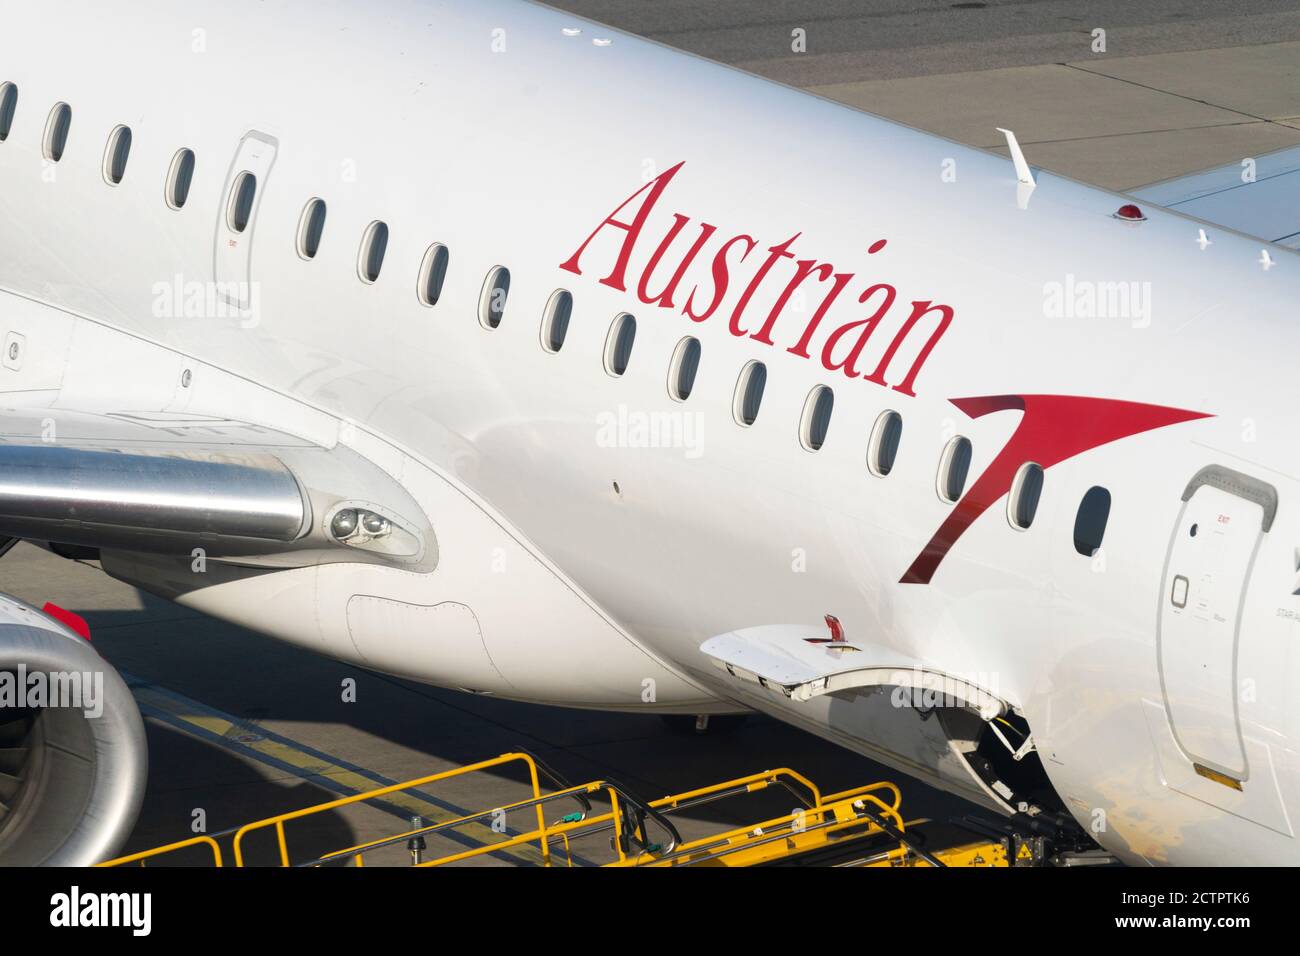 Un closeup di un aereo passeggeri Austrian Airlines parcheggiato all'aeroporto di Heathrow che mostra il logo e le lettere sull'aereo, Regno Unito Foto Stock